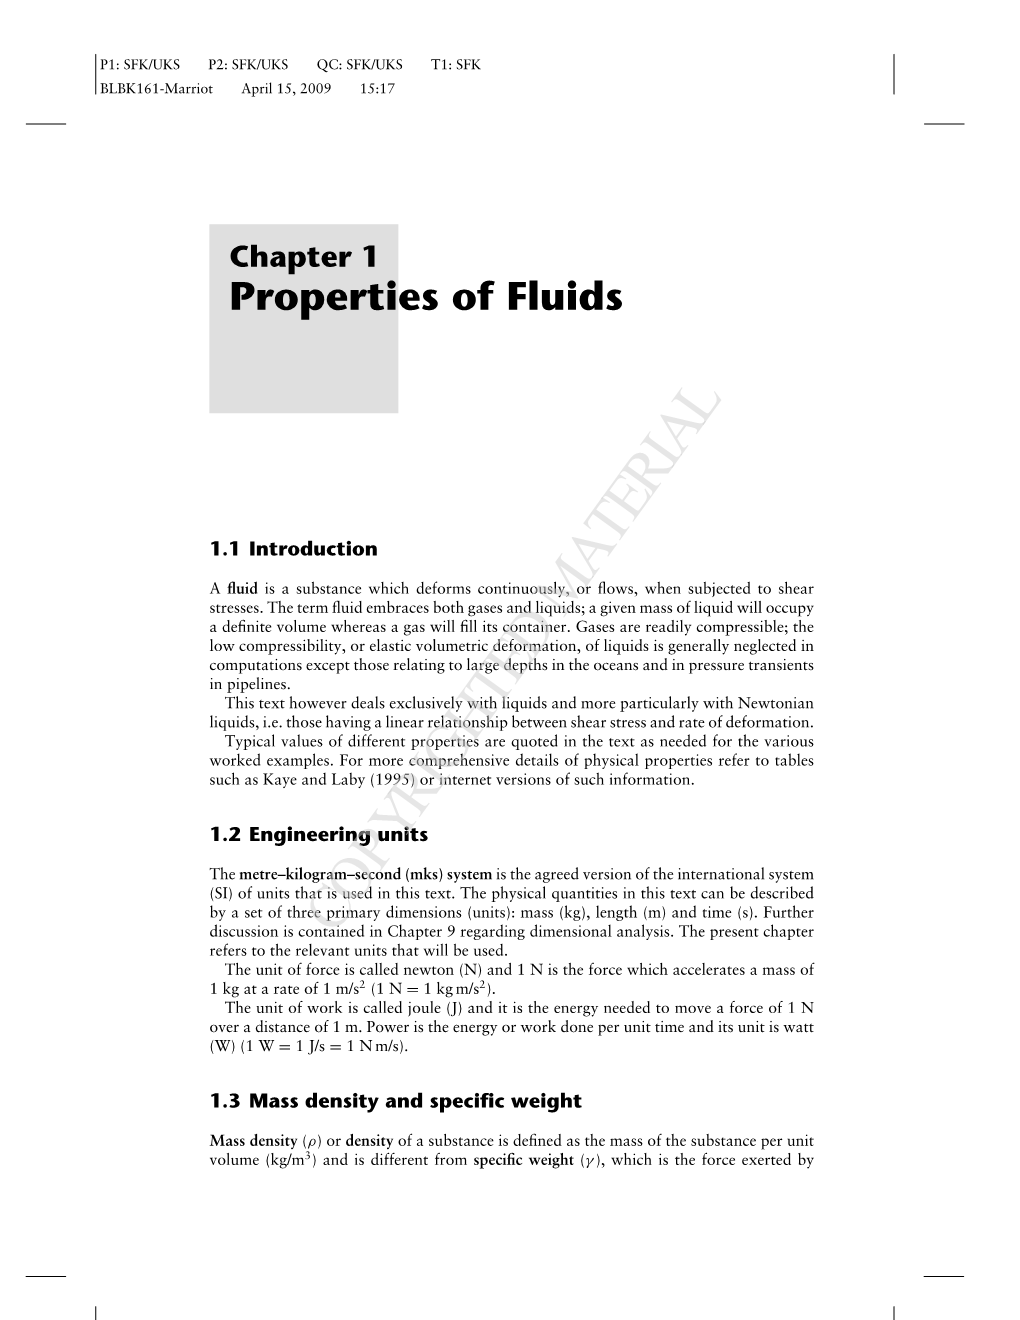 Chapter 1 Properties of Fluids